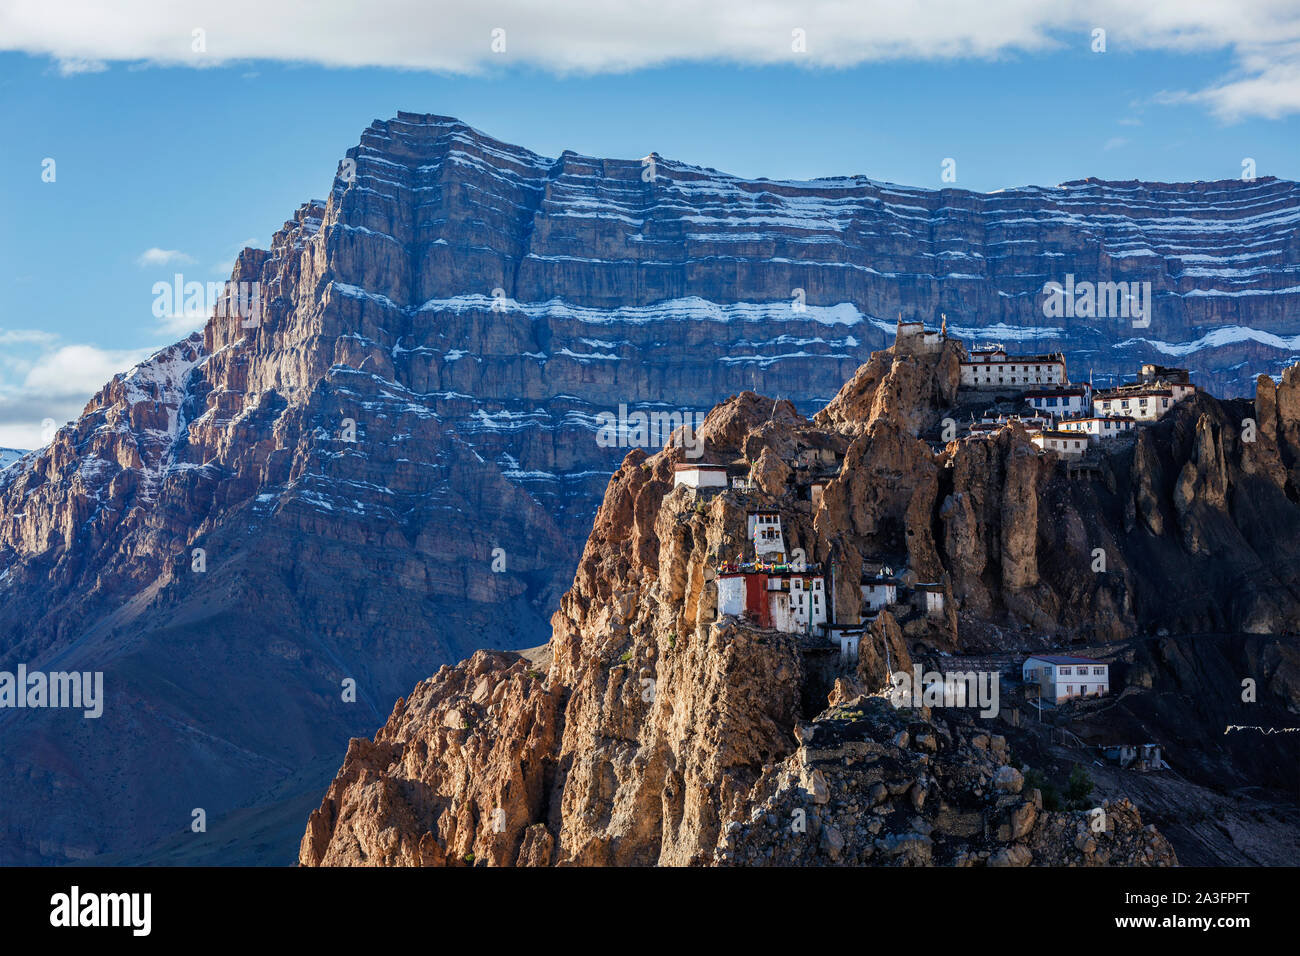 Dhankar monastère perché sur une falaise dans les Himalaya, Inde Banque D'Images